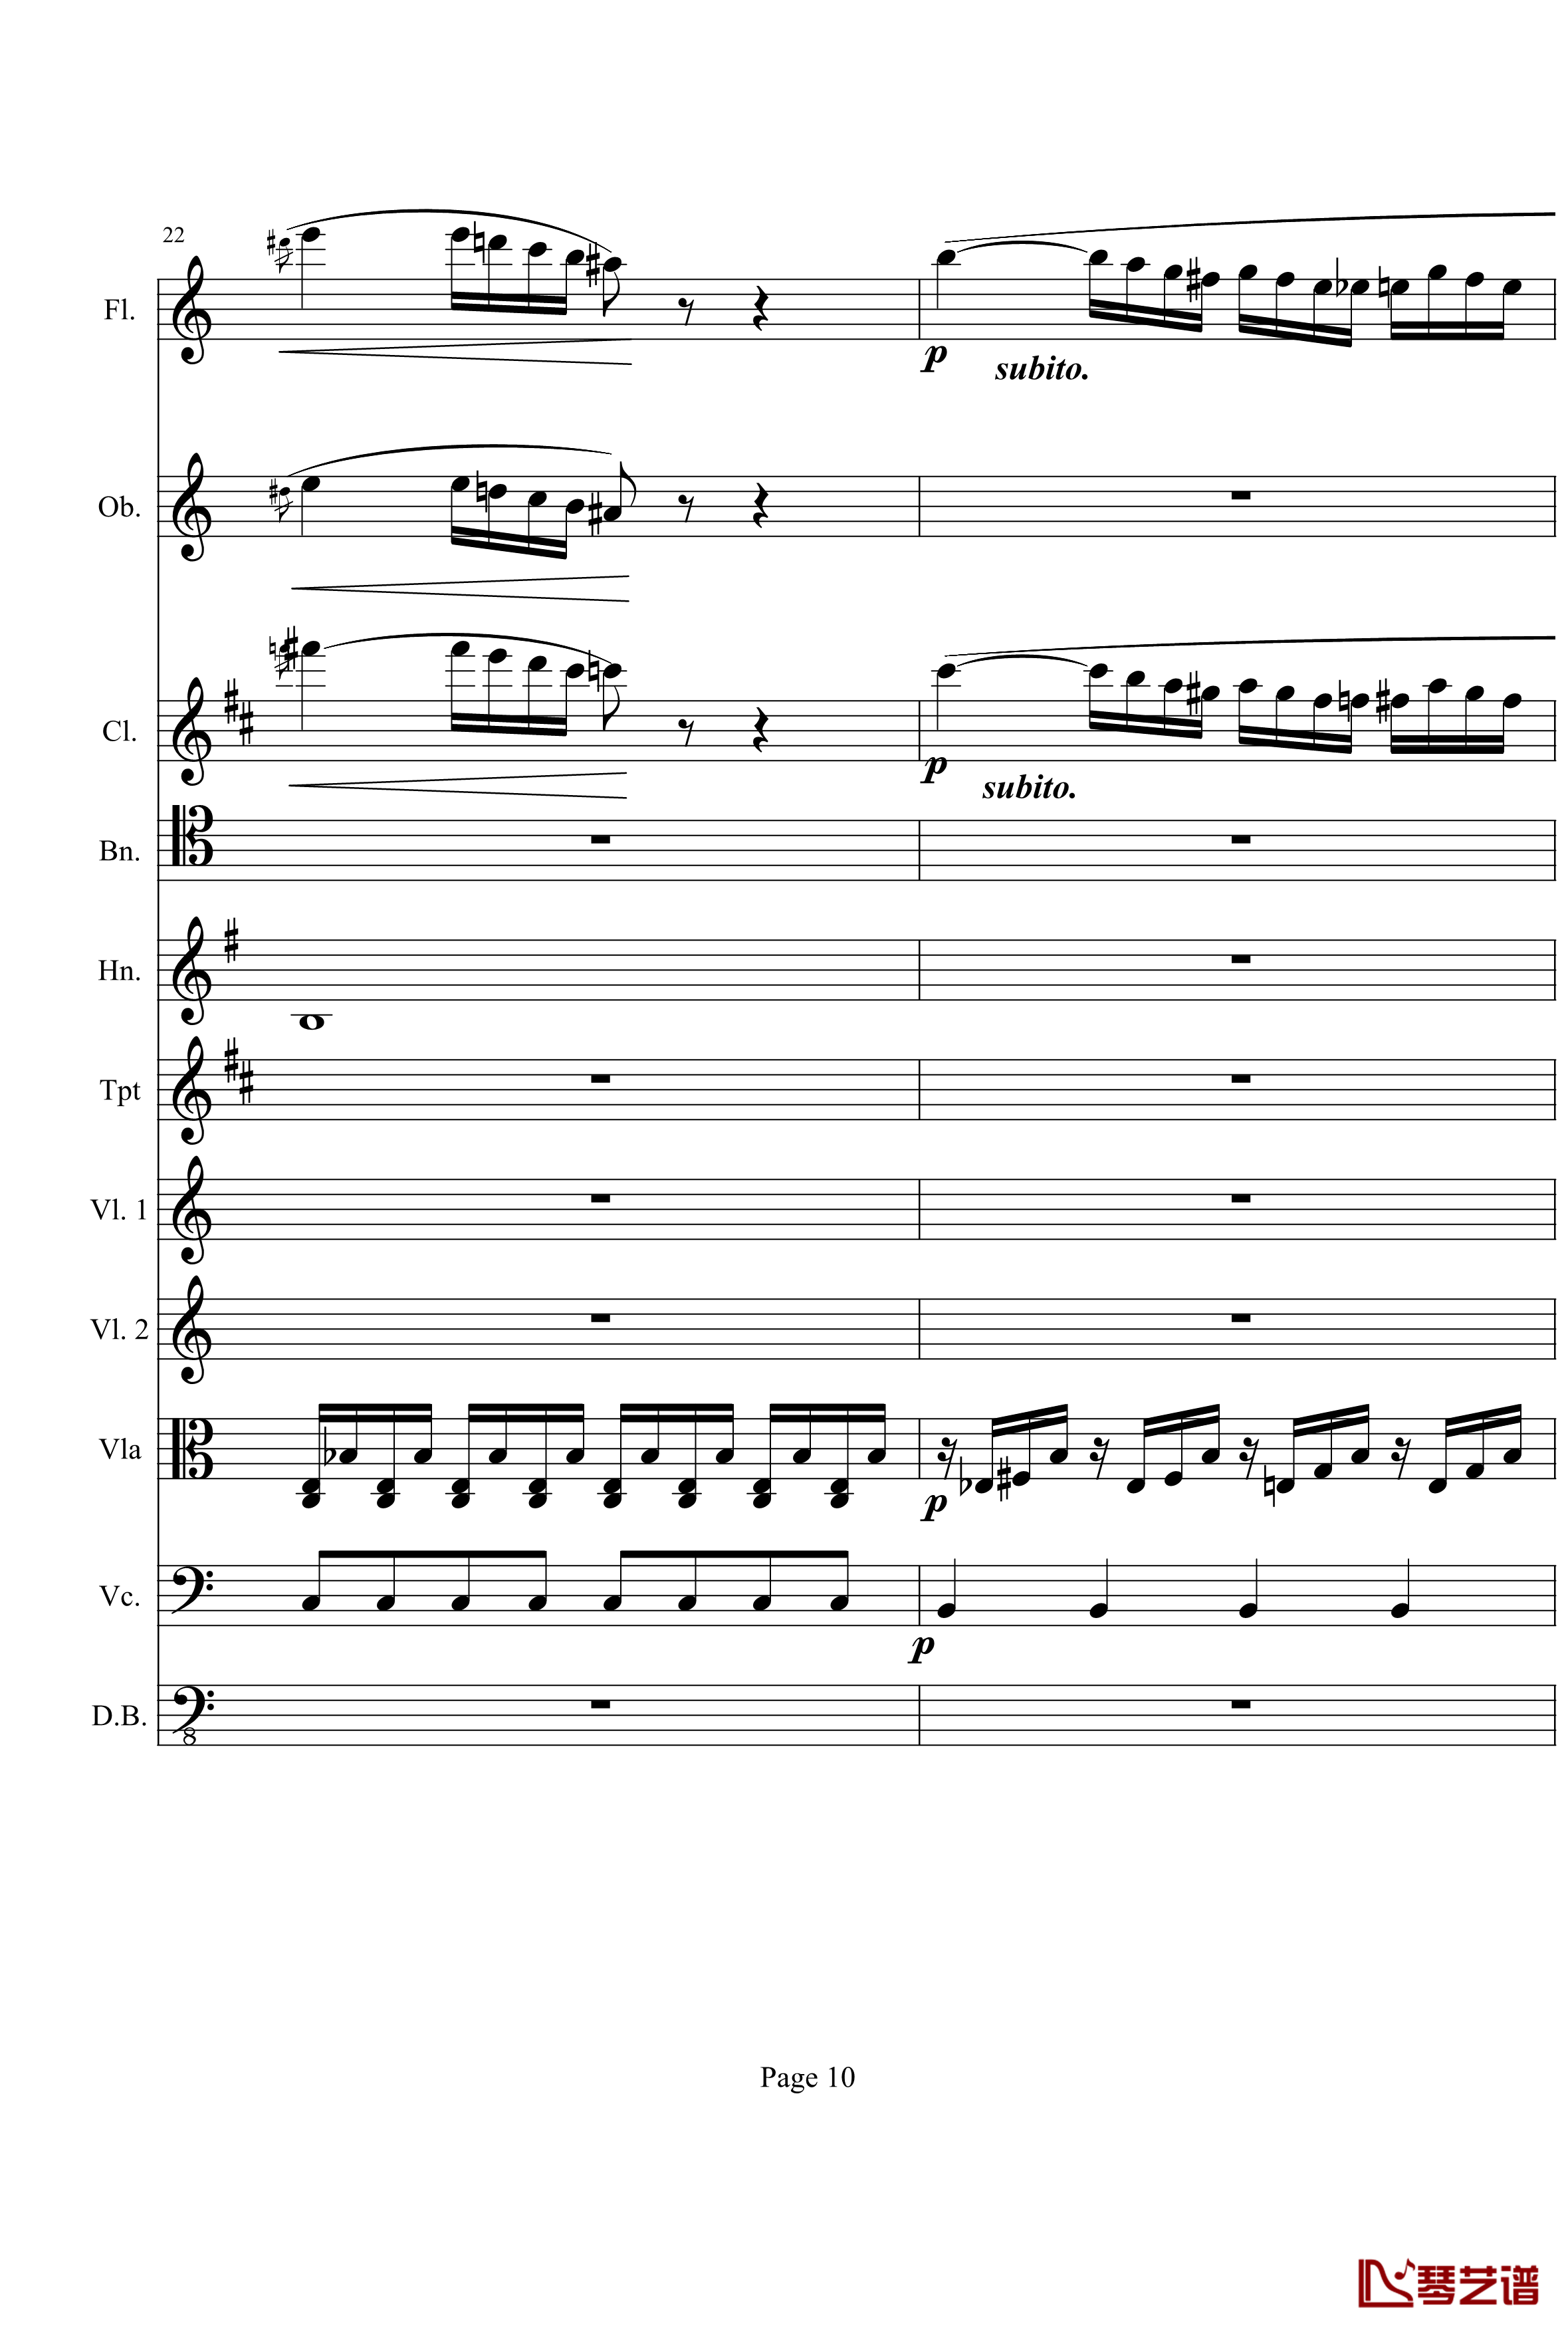 奏鸣曲之交响钢琴谱-第21-Ⅰ-贝多芬-beethoven10